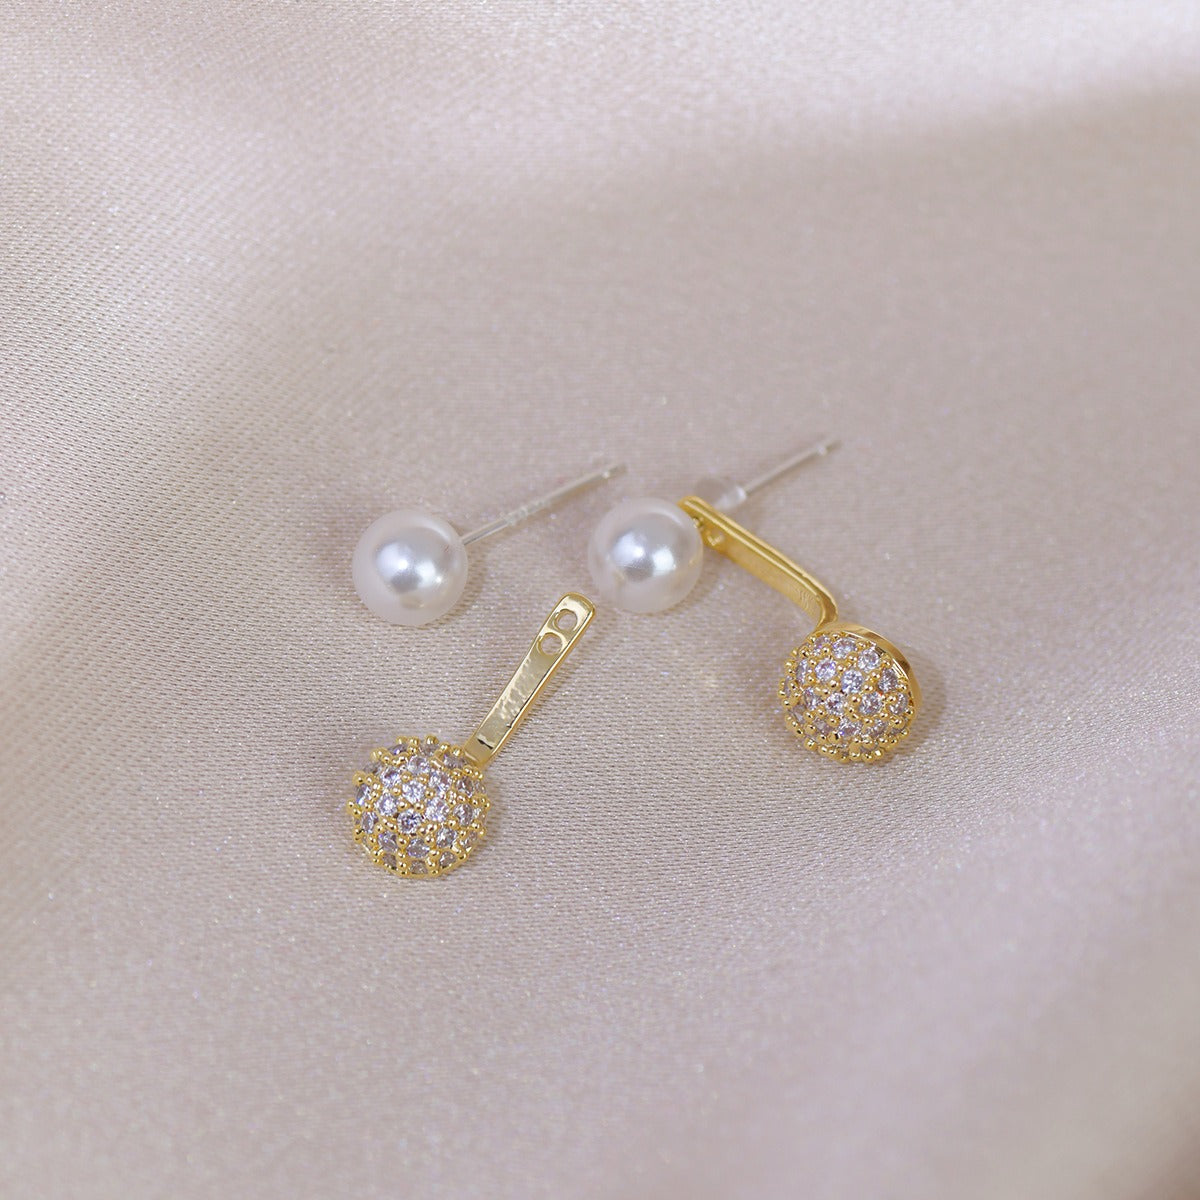 Cercei aurii, suflati cu aur 14k, cu perle si pietre, Miriam C2